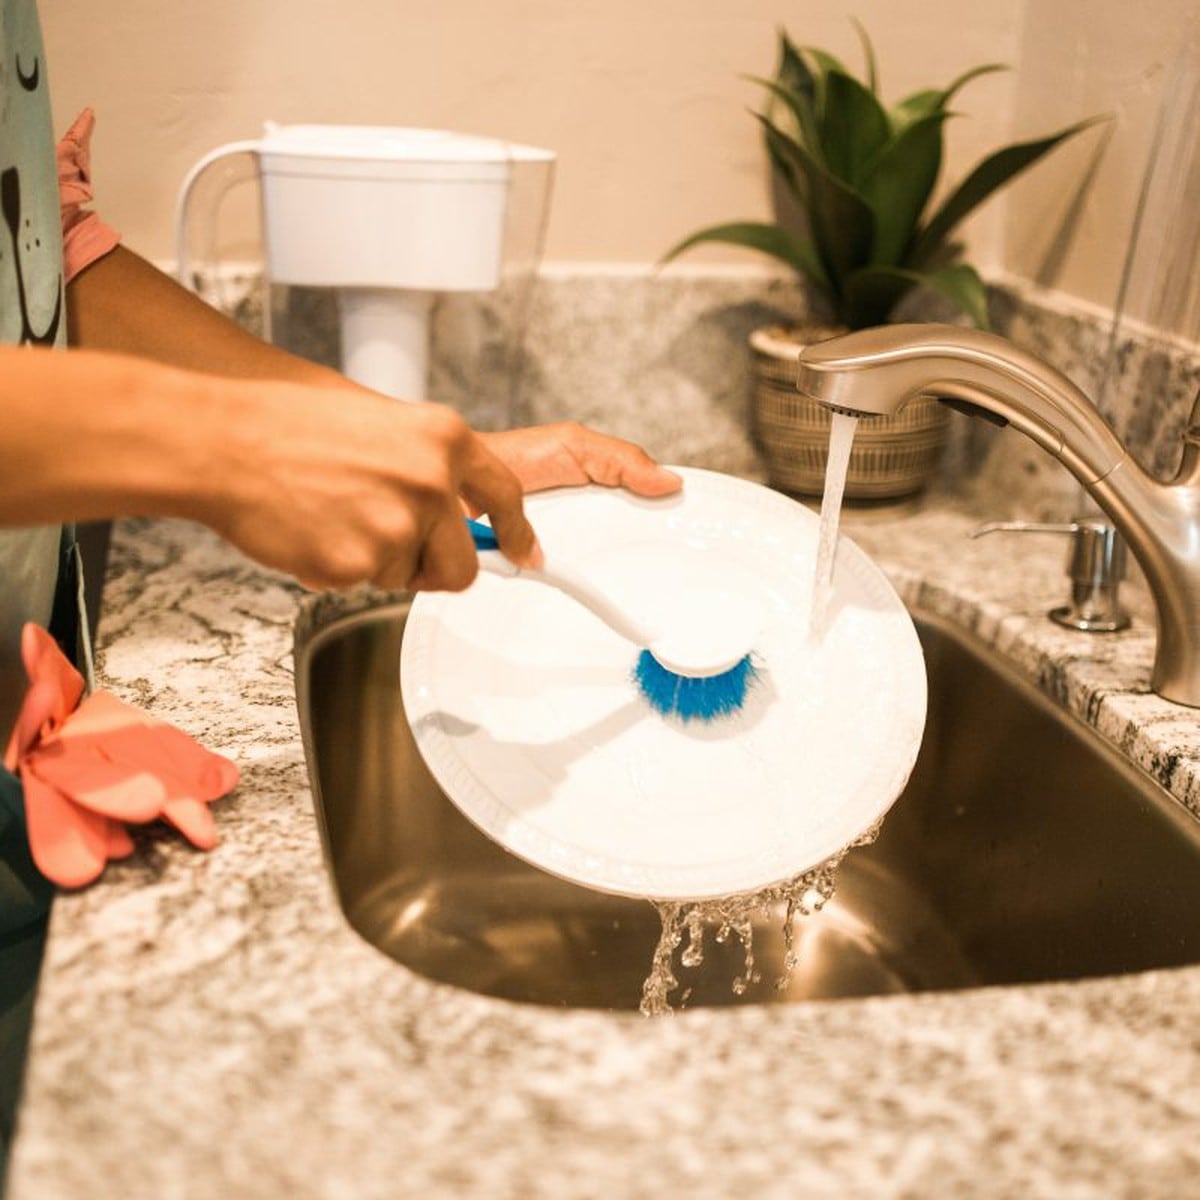 Por qué no deberías limpiar la vajilla con papel de cocina?